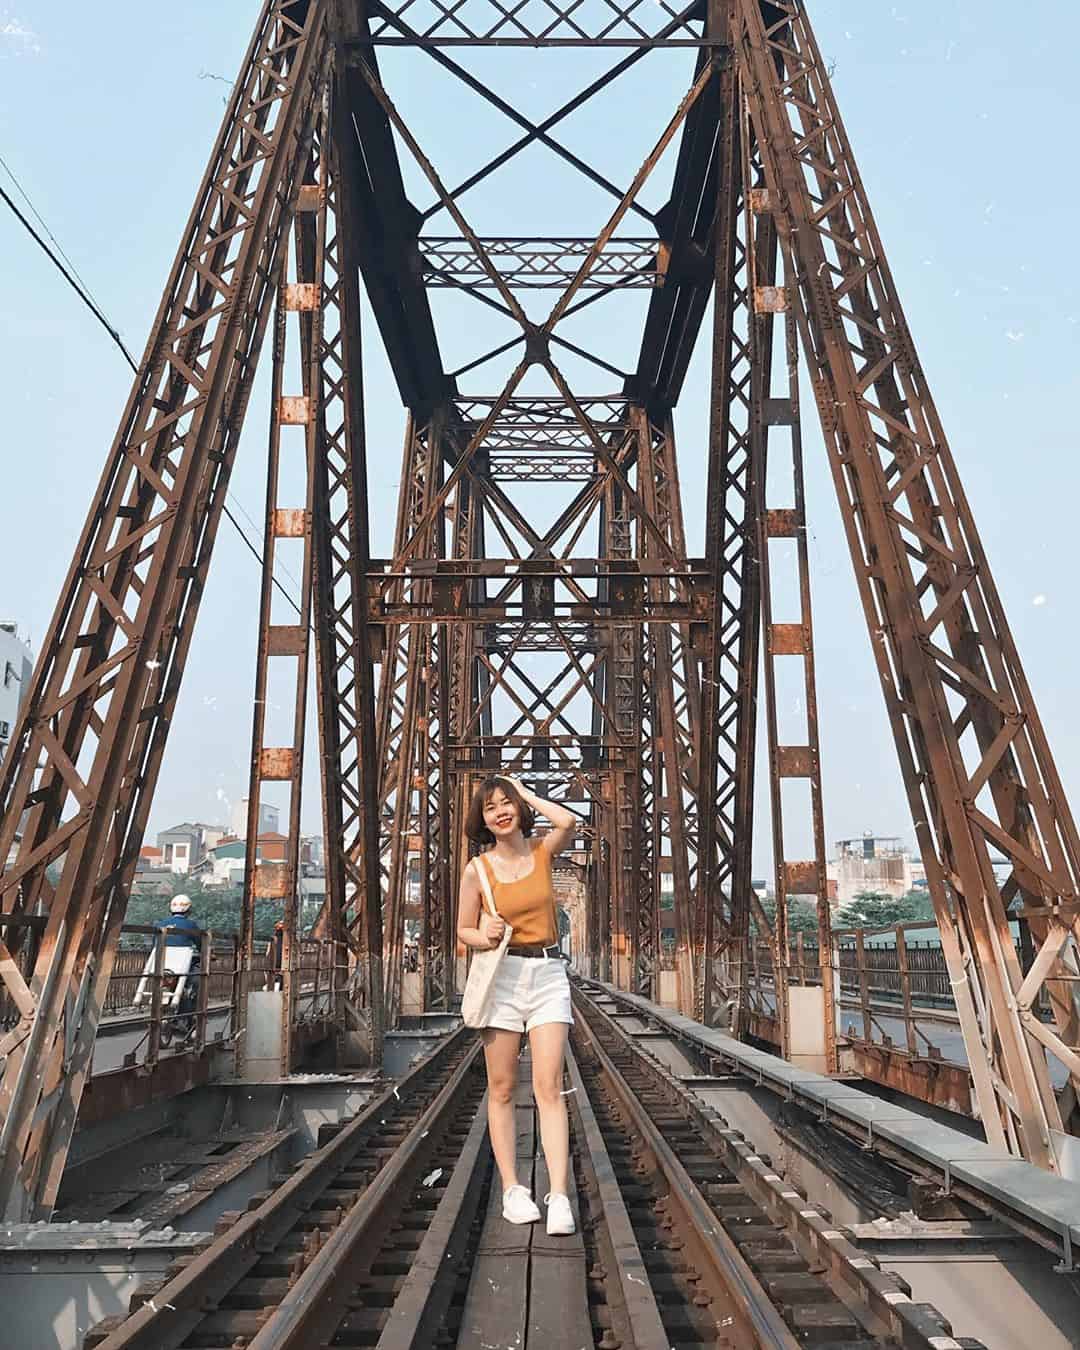 Cầu Long Biên mang vẻ đẹp cổ kính. Ảnh: @phuongnt93